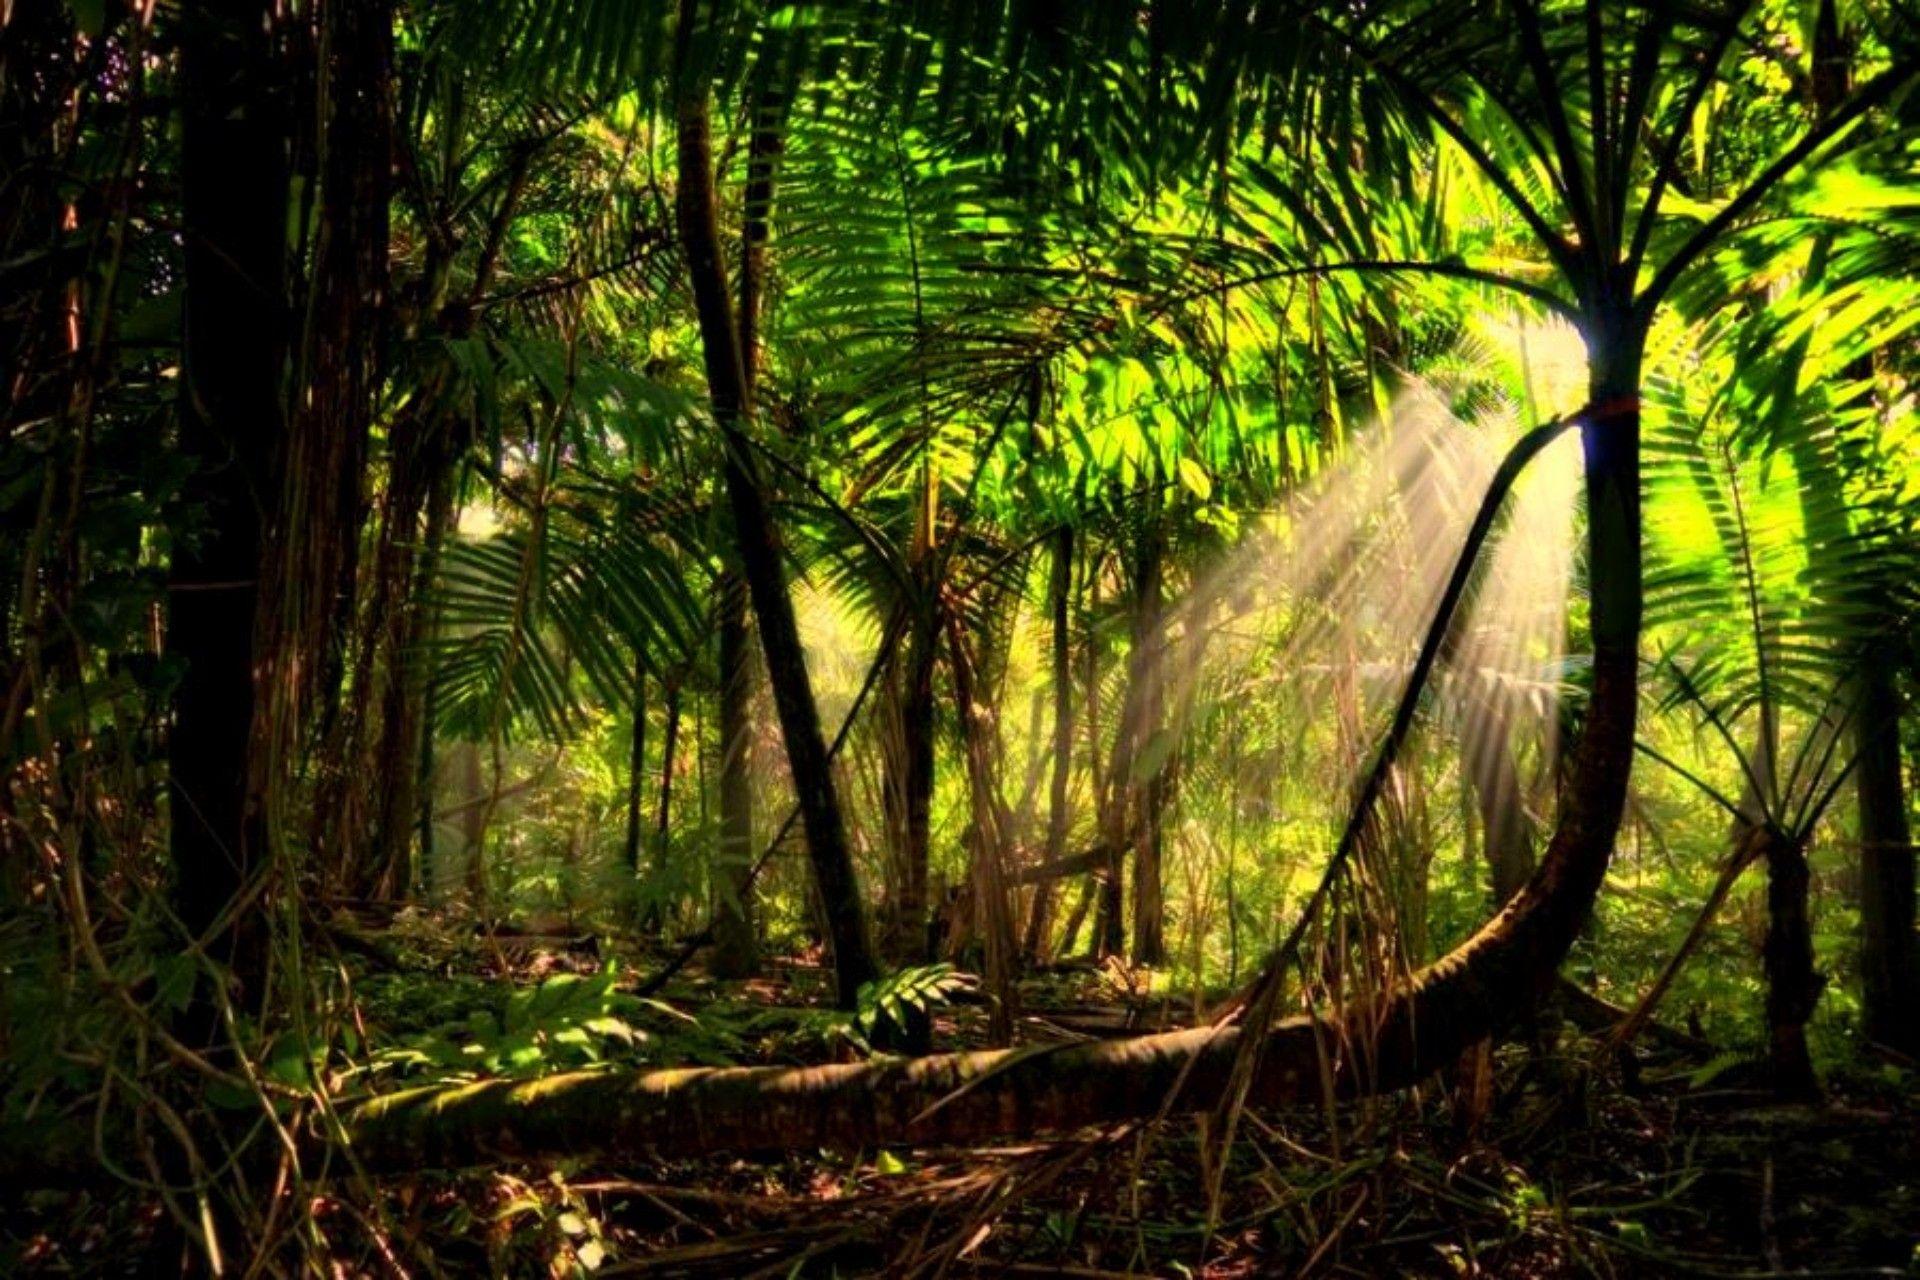 Амазонка дика природа. Бразилия тропические леса Сельва. Лес Эль Юнке, Пуэрто-Рико. Тропические дождевые леса Амазонии. Тропикал Рейнфорест.